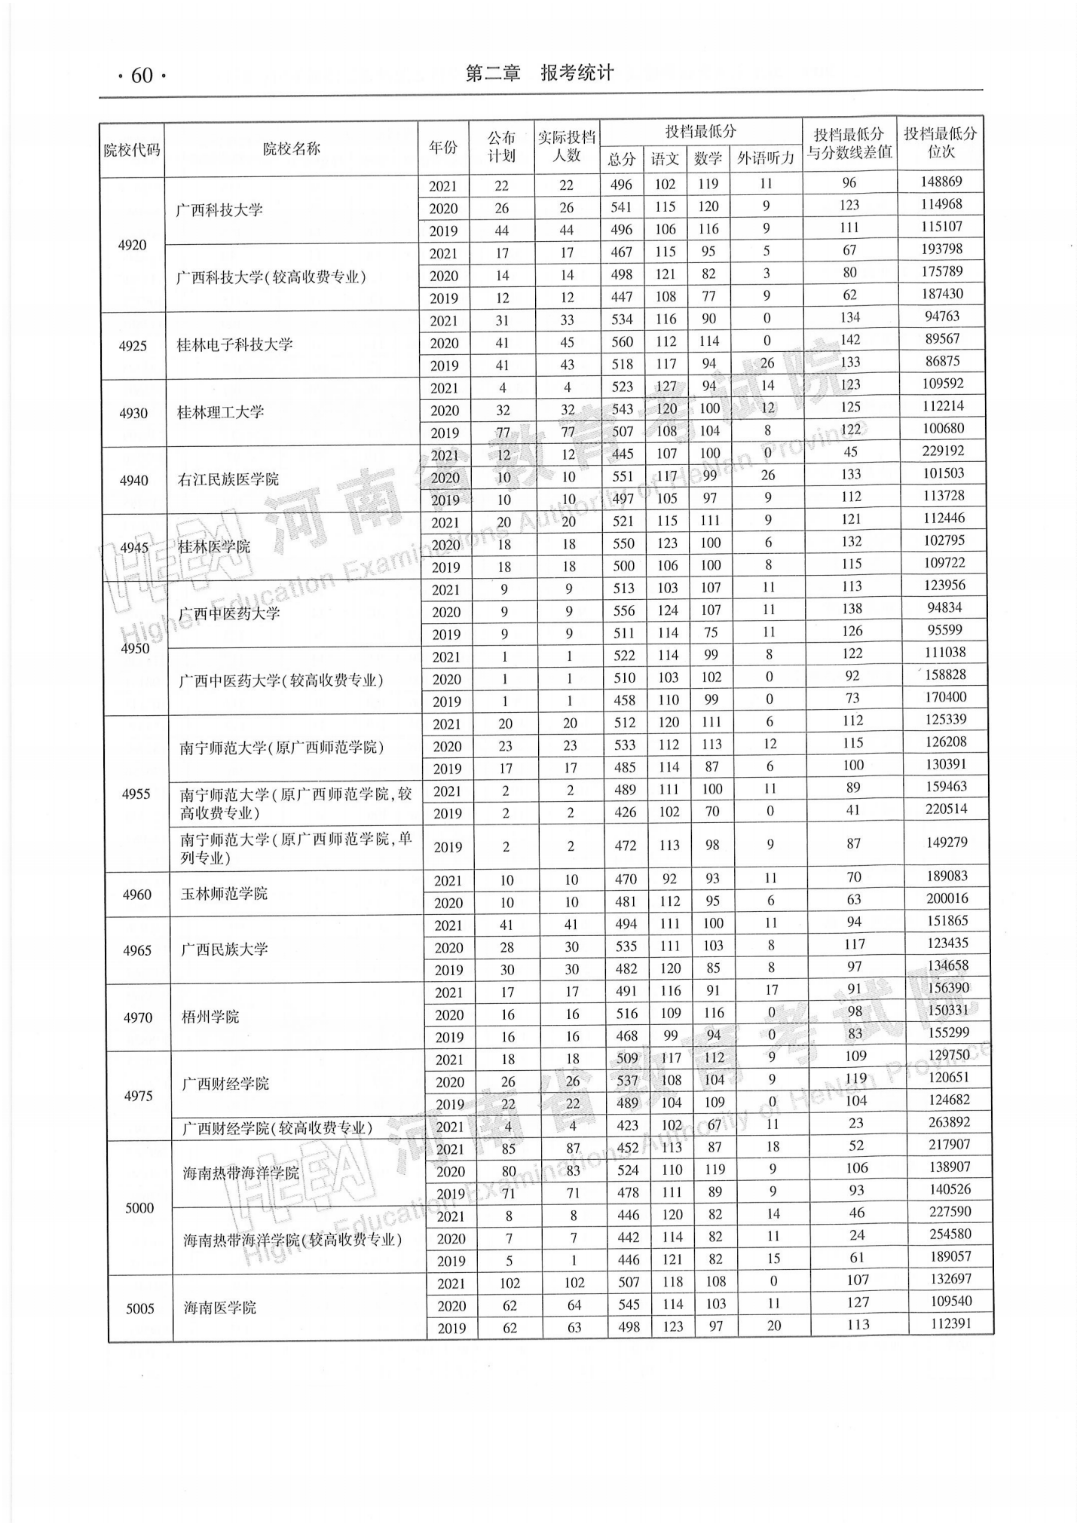 河南省2019—2021年本科二批平行投档最低分